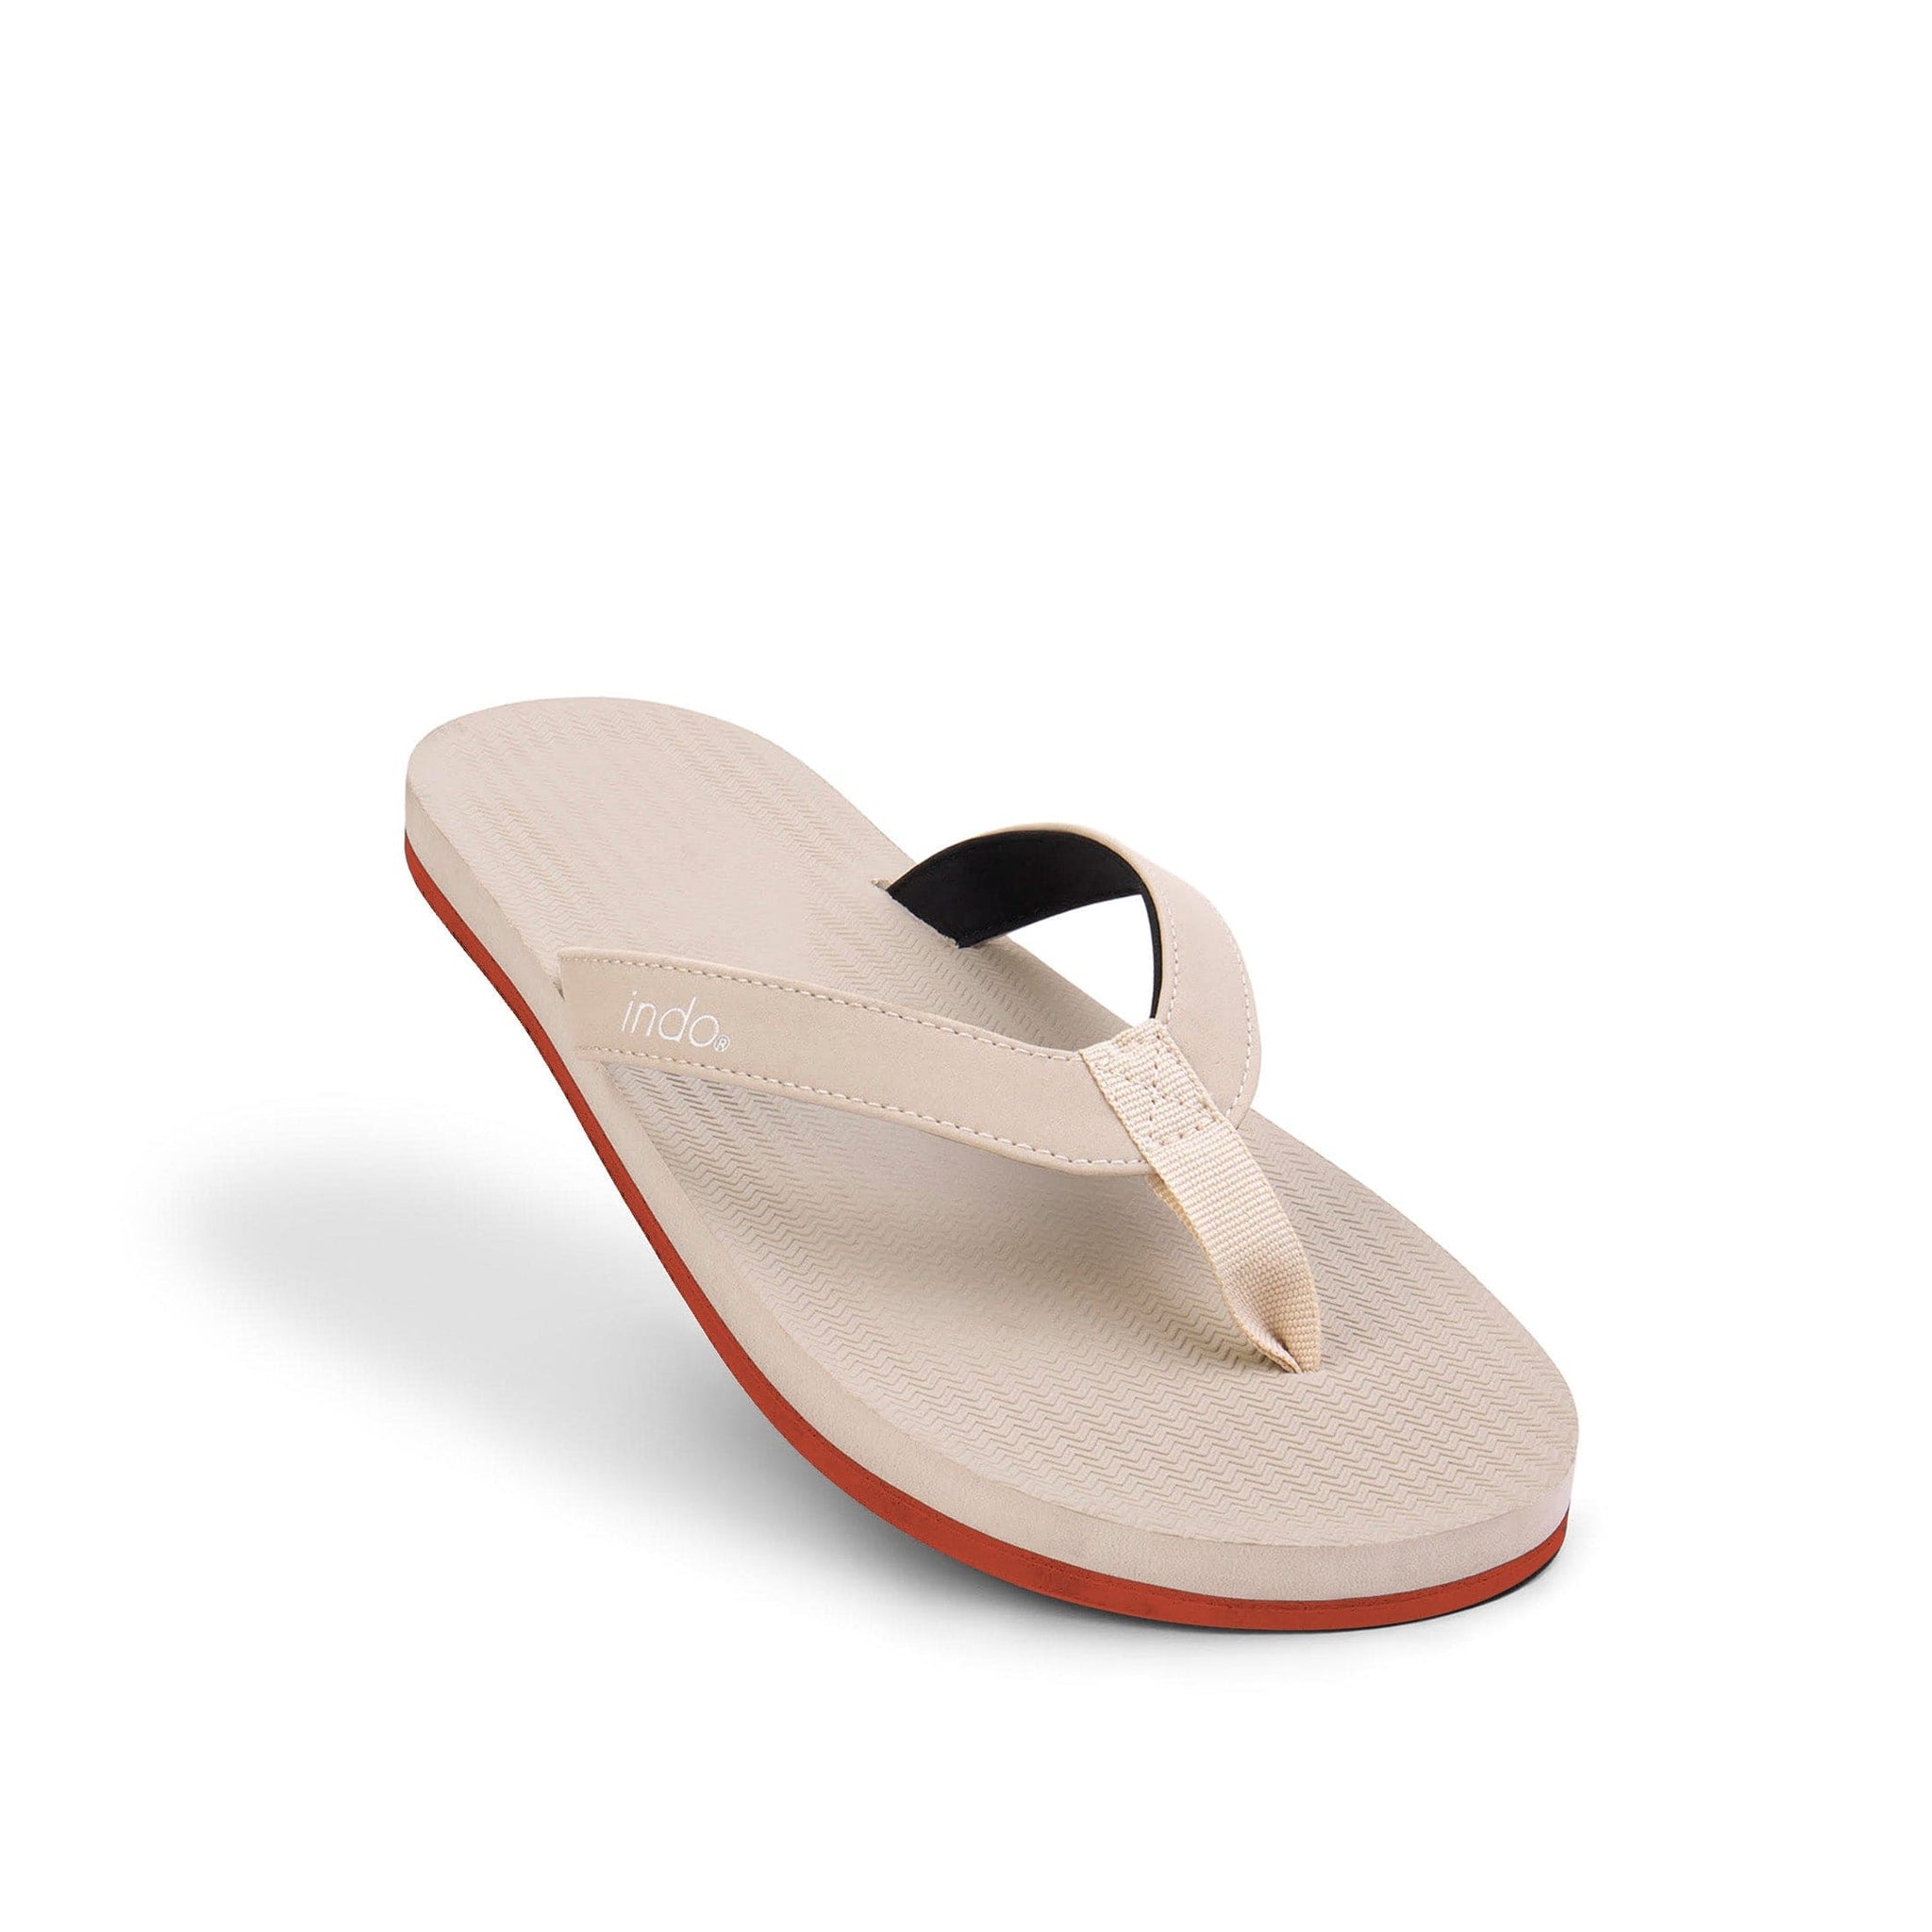 Men’s Flip Flops Sneaker Sole - Sea Salt/Orange Sole by Indosole